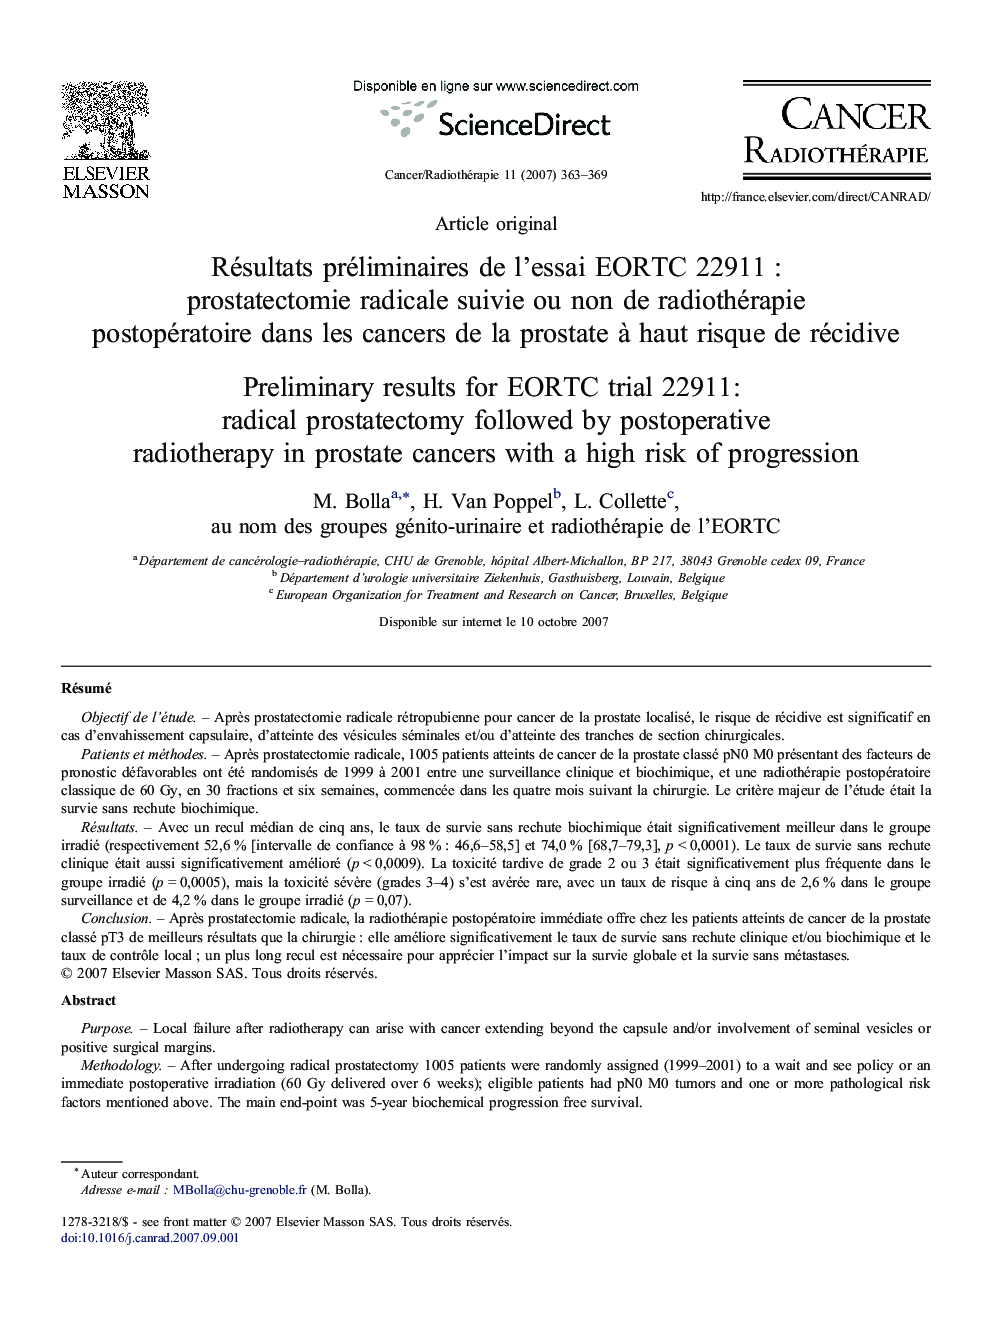 Résultats préliminaires de l'essai EORTC 22911 : prostatectomie radicale suivie ou non de radiothérapie postopératoire dans les cancers de la prostate à haut risque de récidive